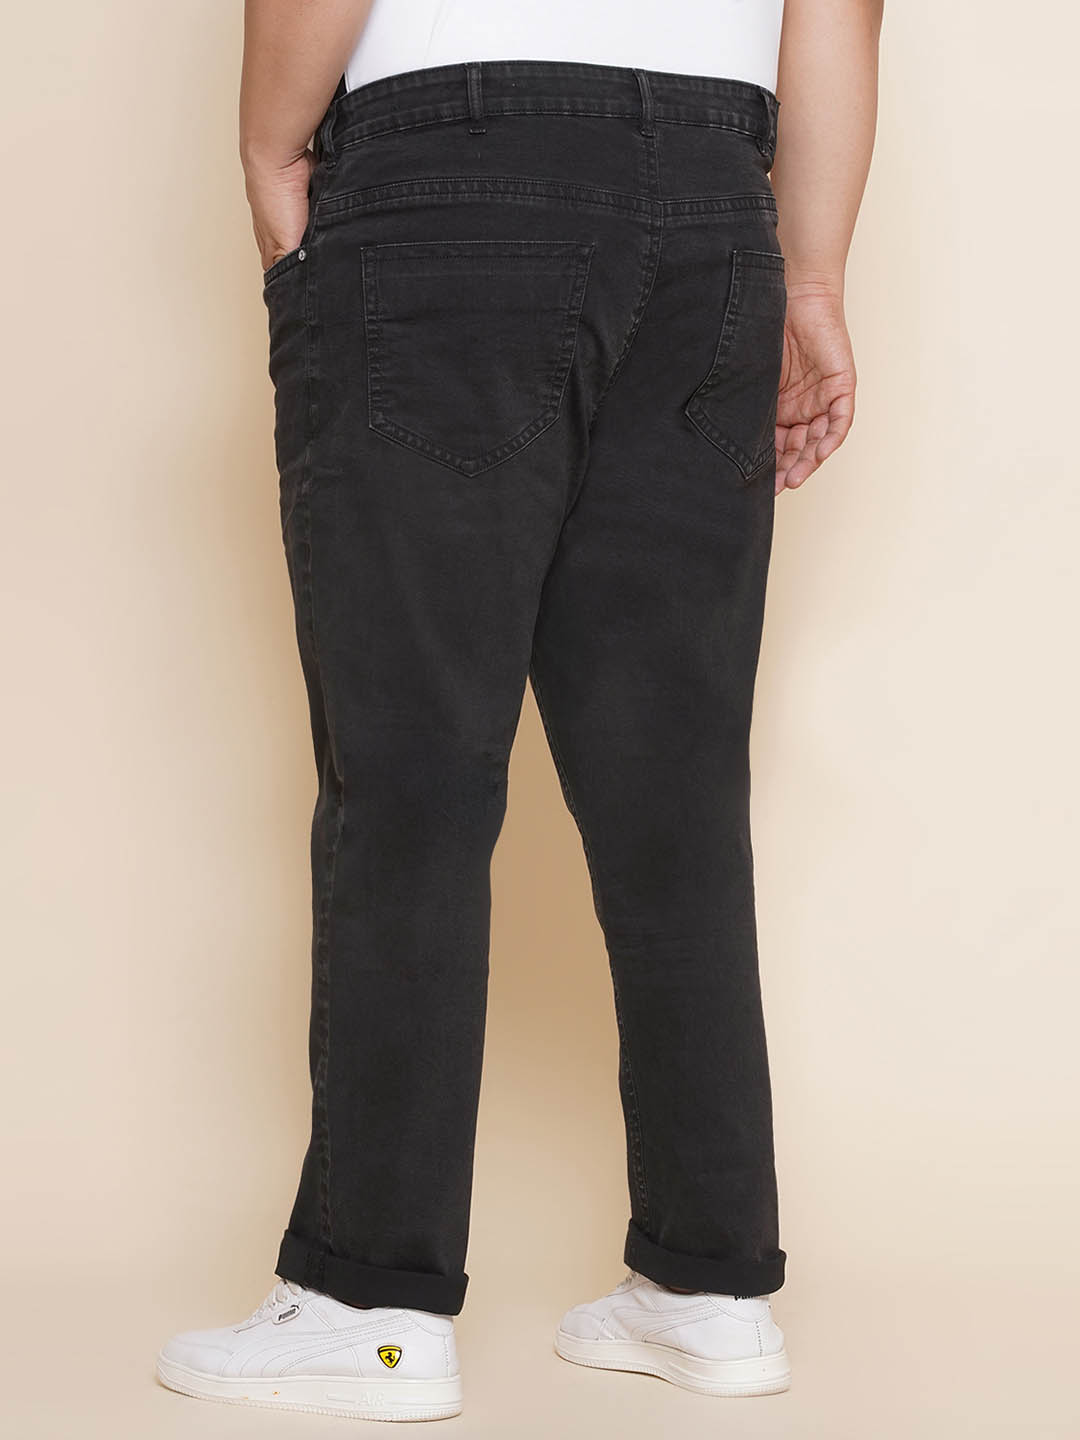 bottomwear/jeans/JPJ27066/jpj27066-5.jpg